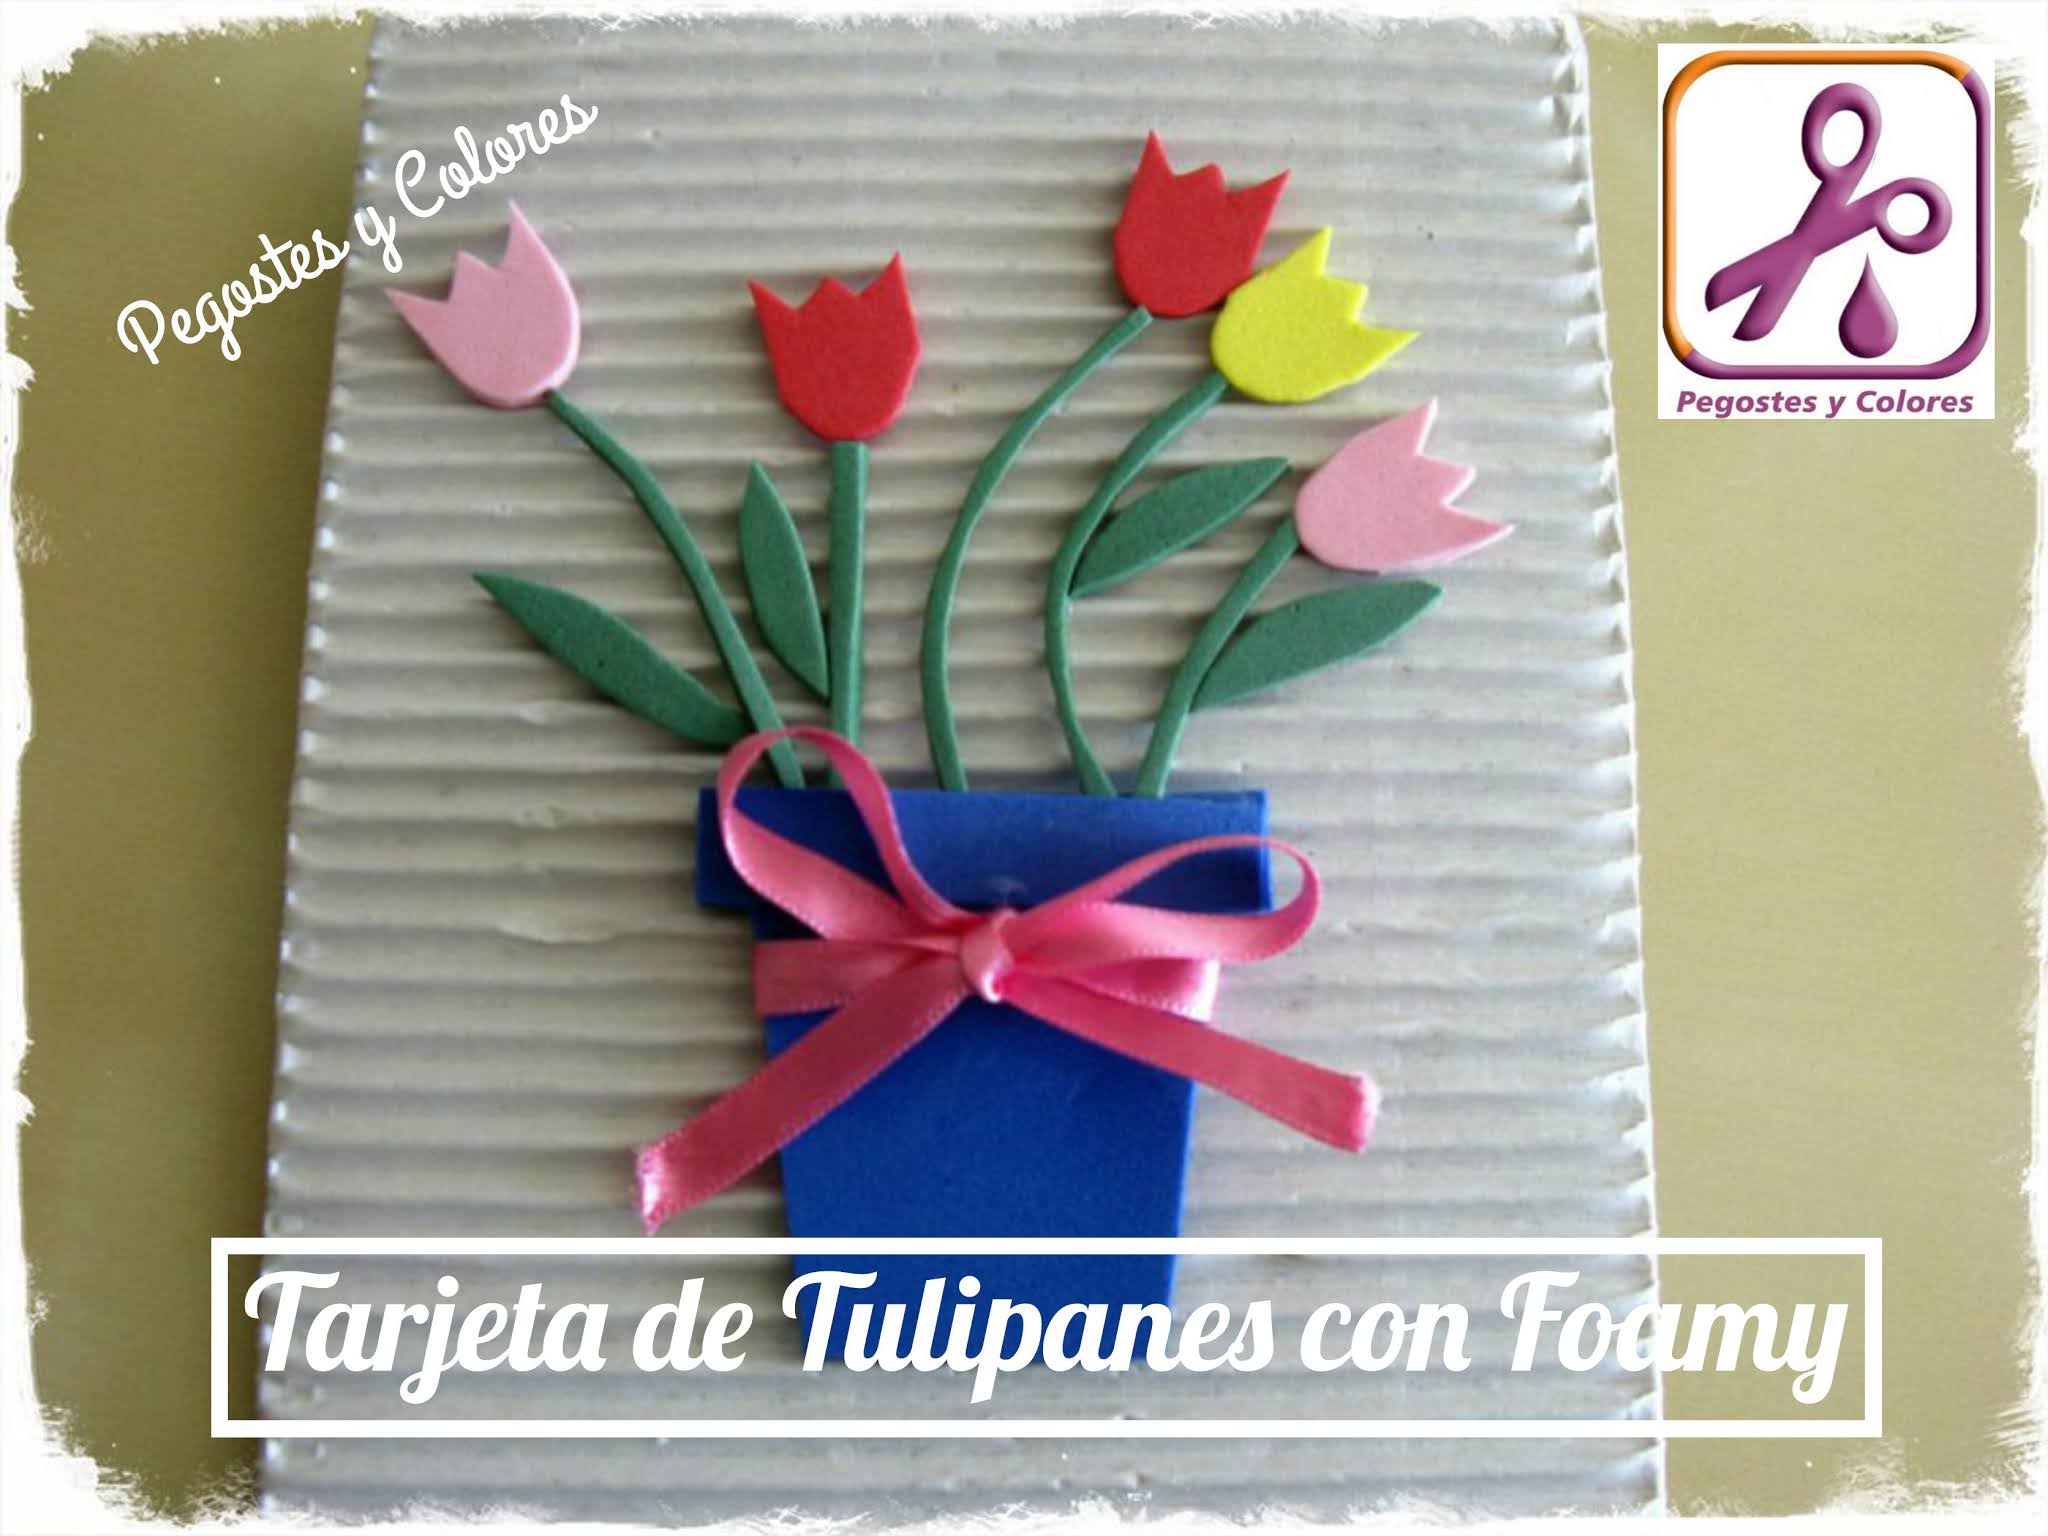 Pegostes y Colores: Tarjeta de Tulipanes con Foamy